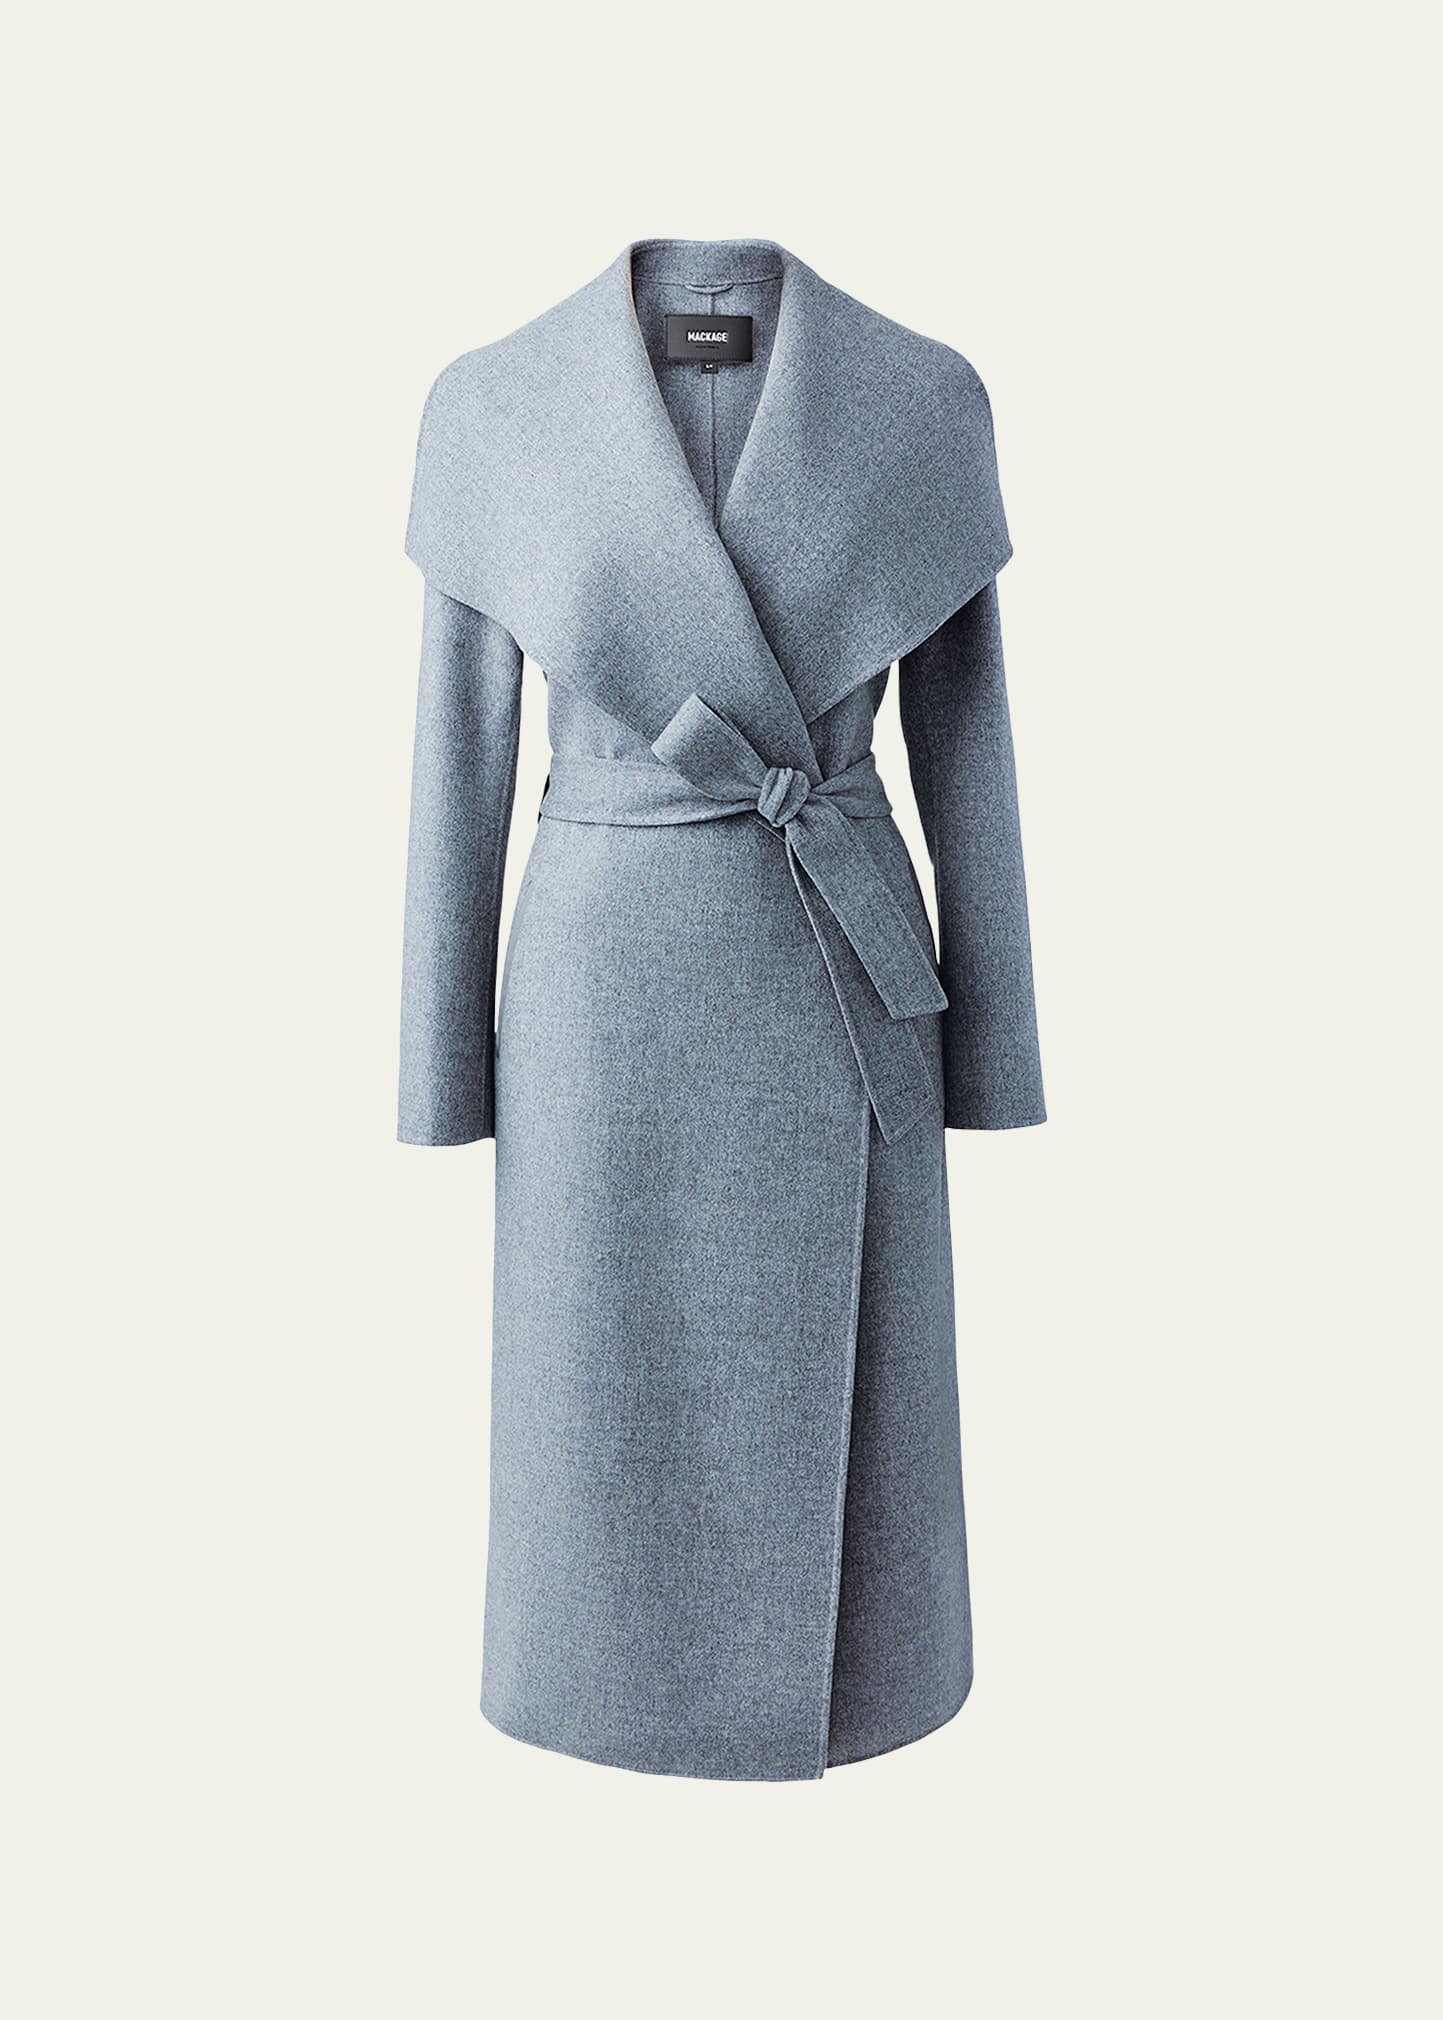 Mackage Mai Wool Belted Wrap Coat In Grey Melange